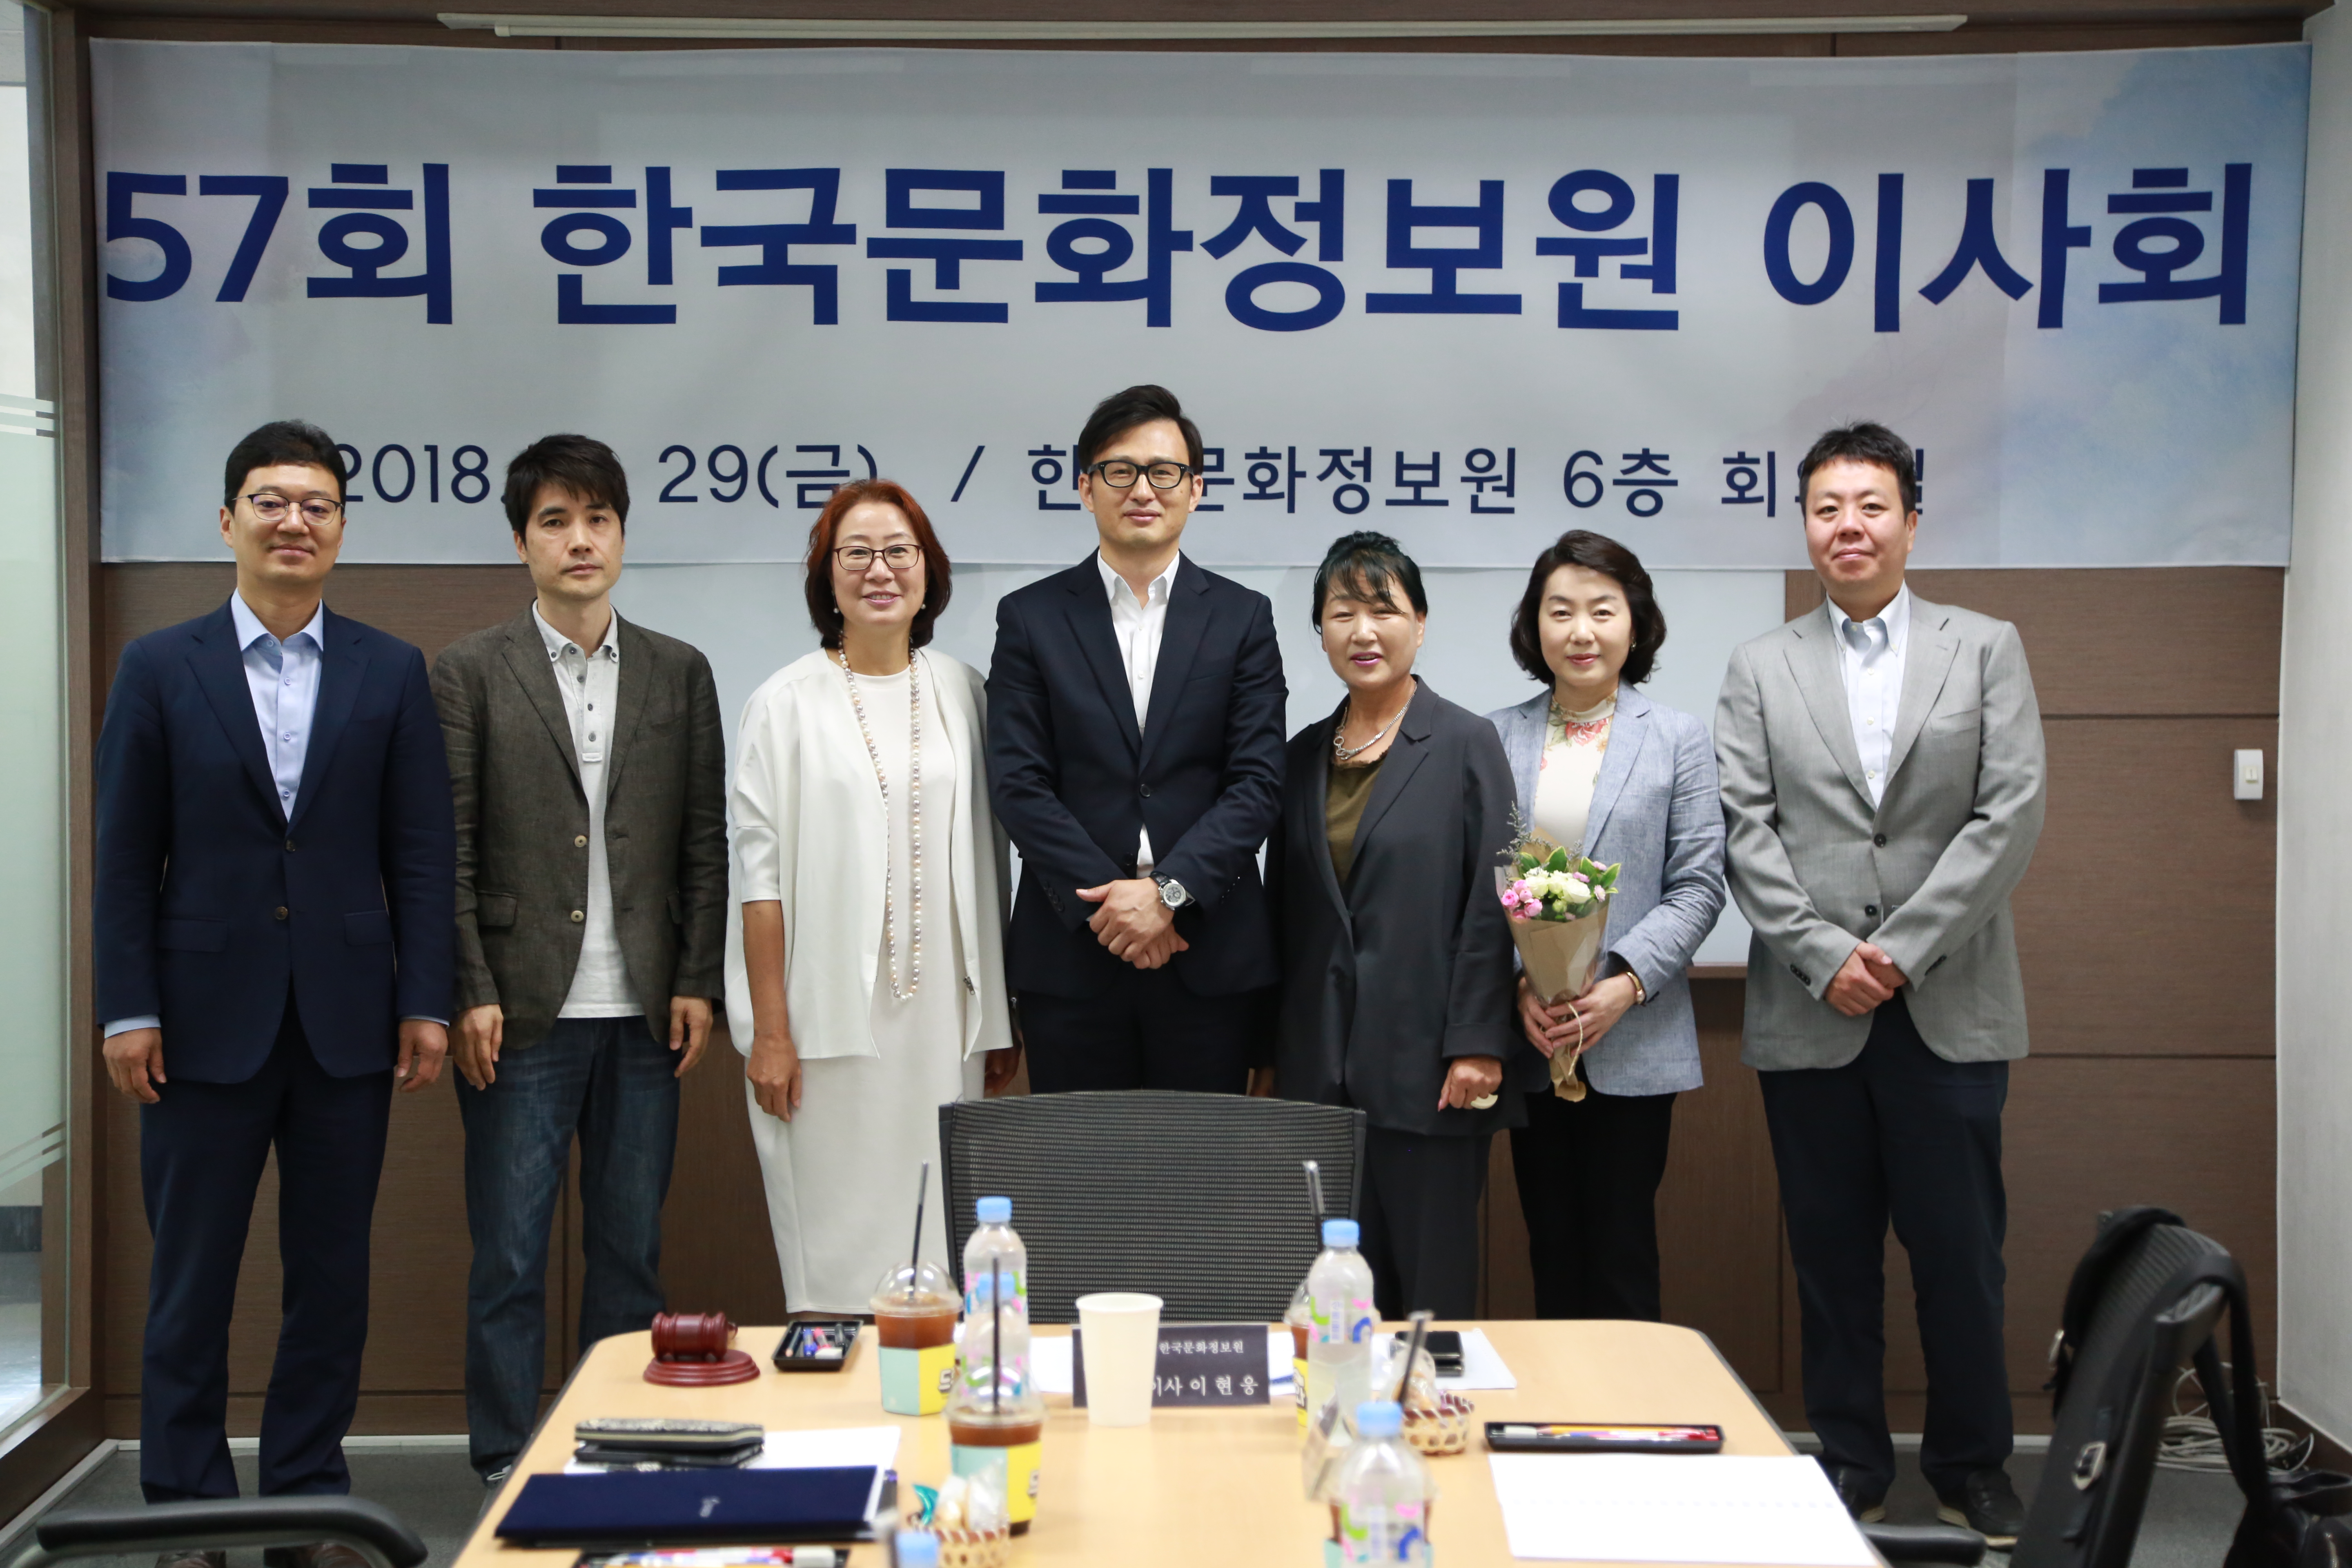 2018년도 한국문화정보원 제57회 임시이사회 개최 단체 사진